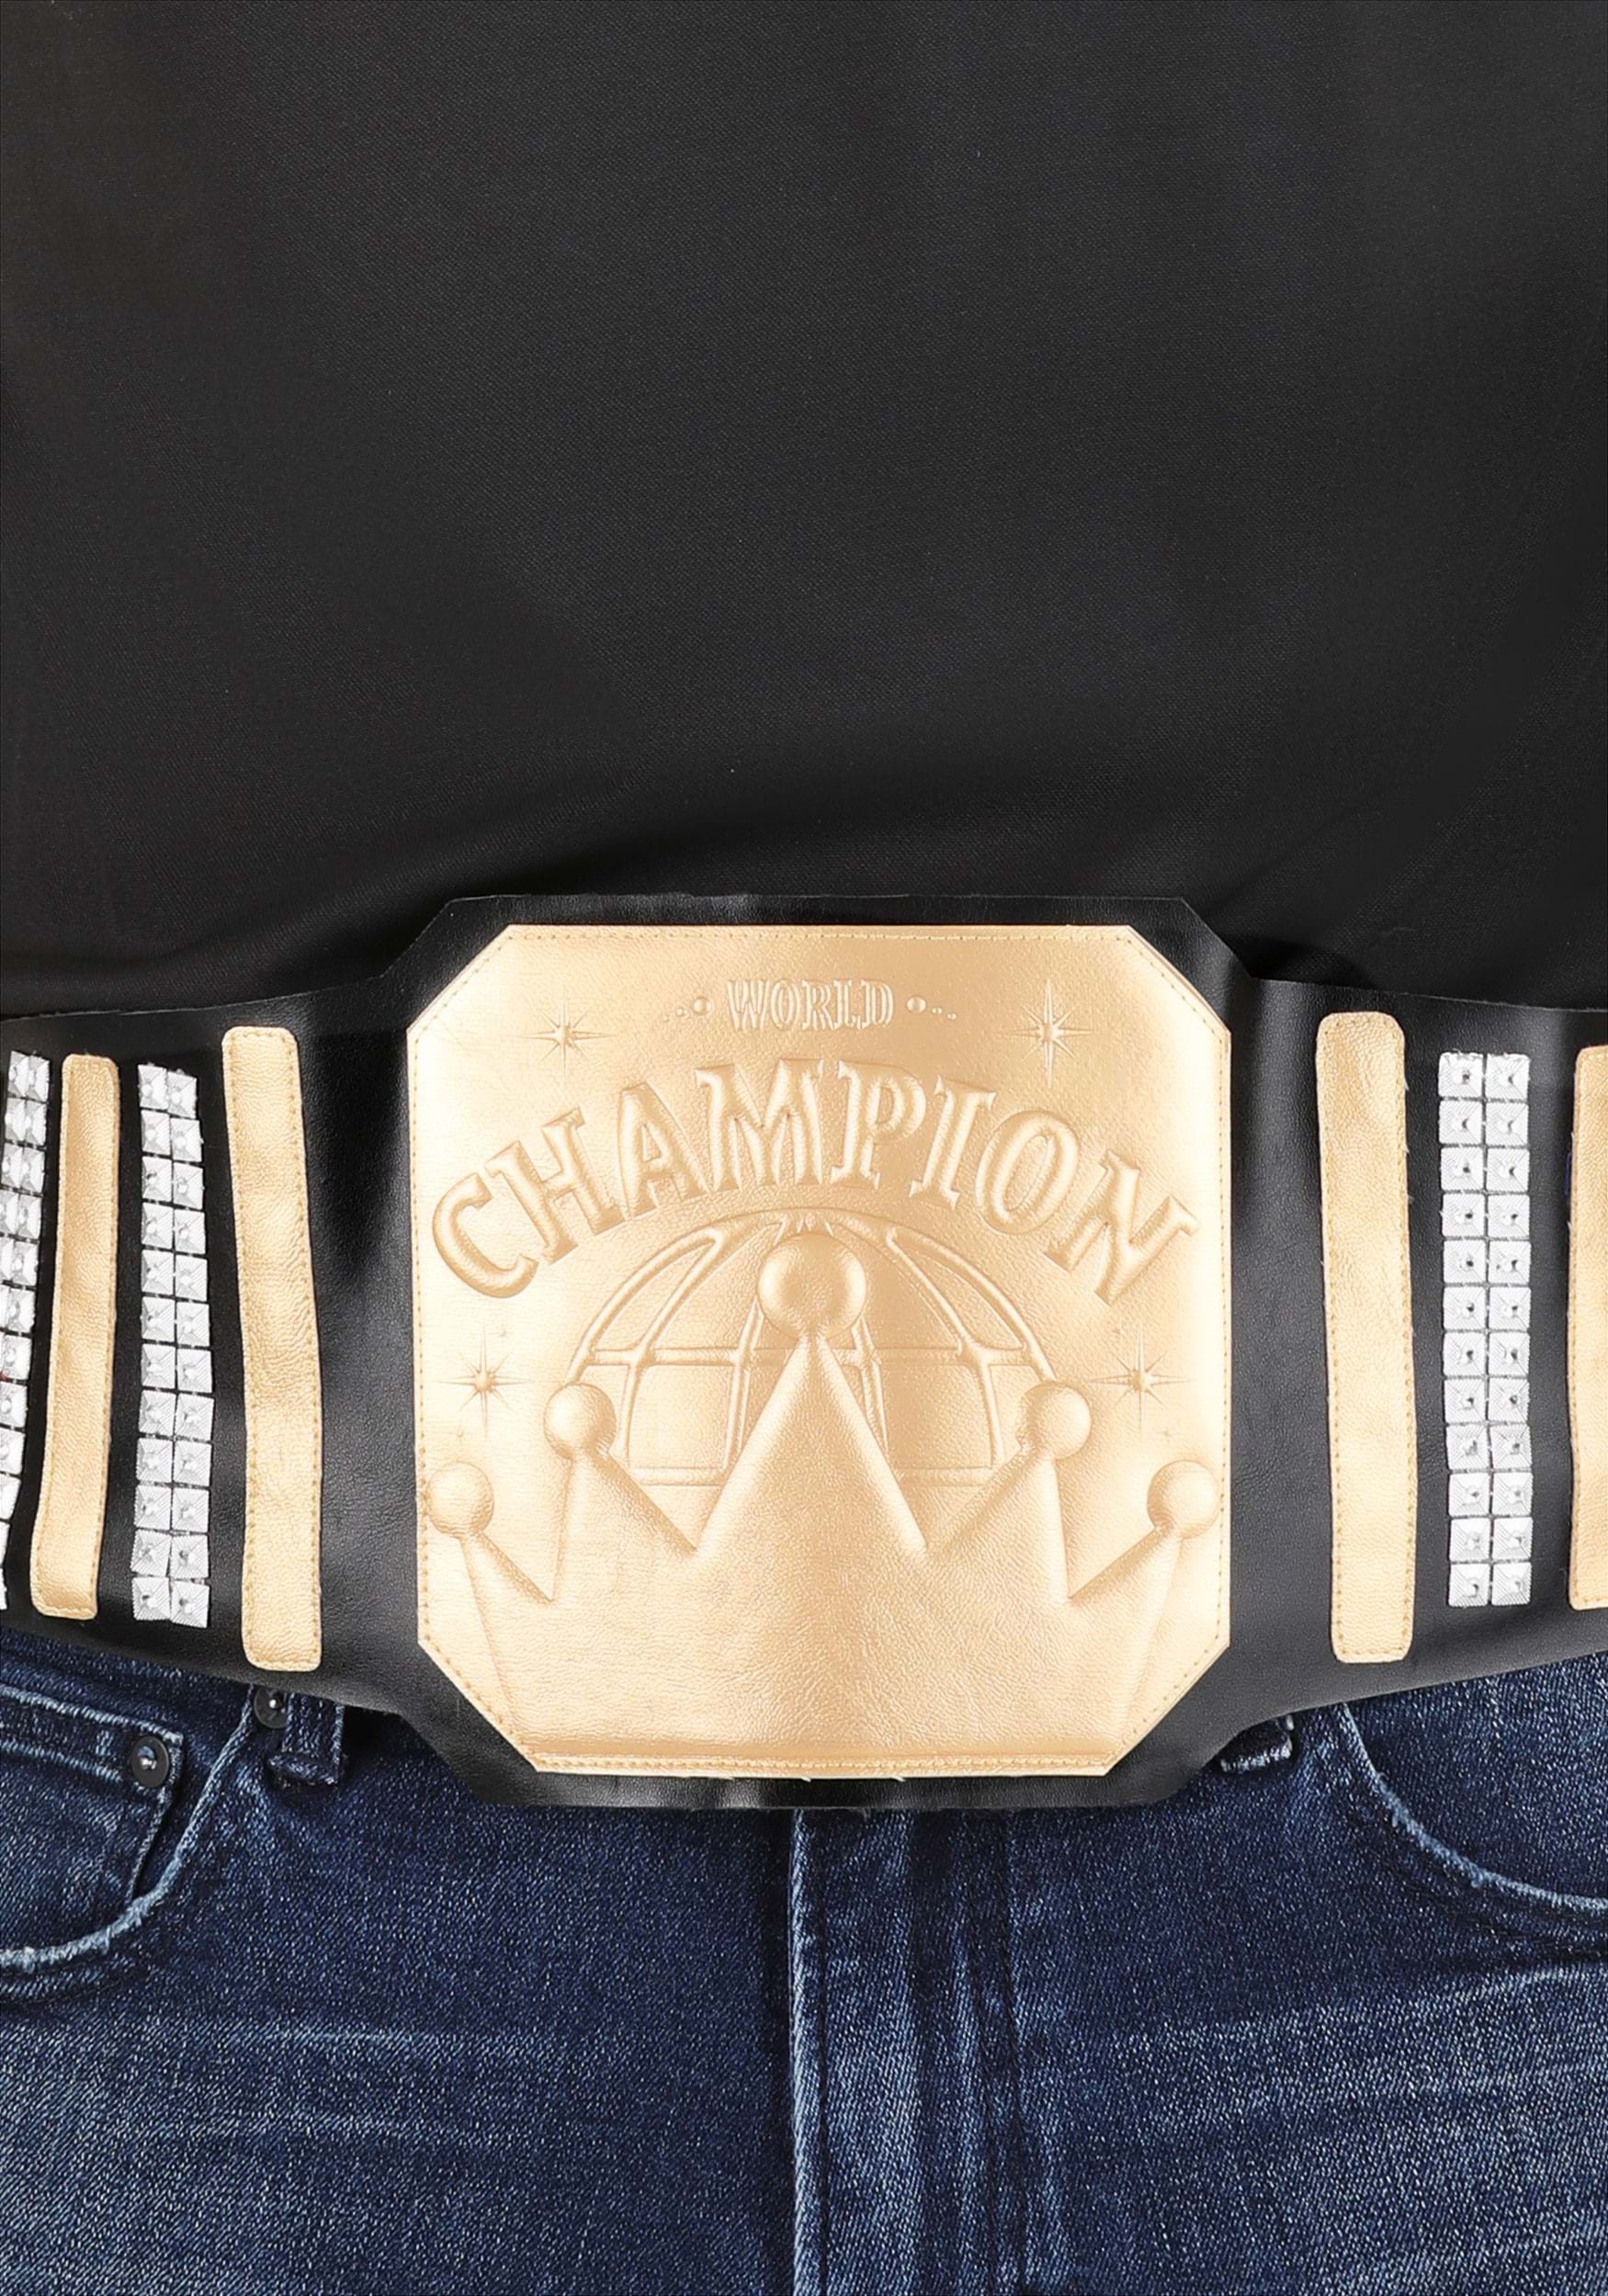 World Championship Belt - Wrestling Titles - 15% Off